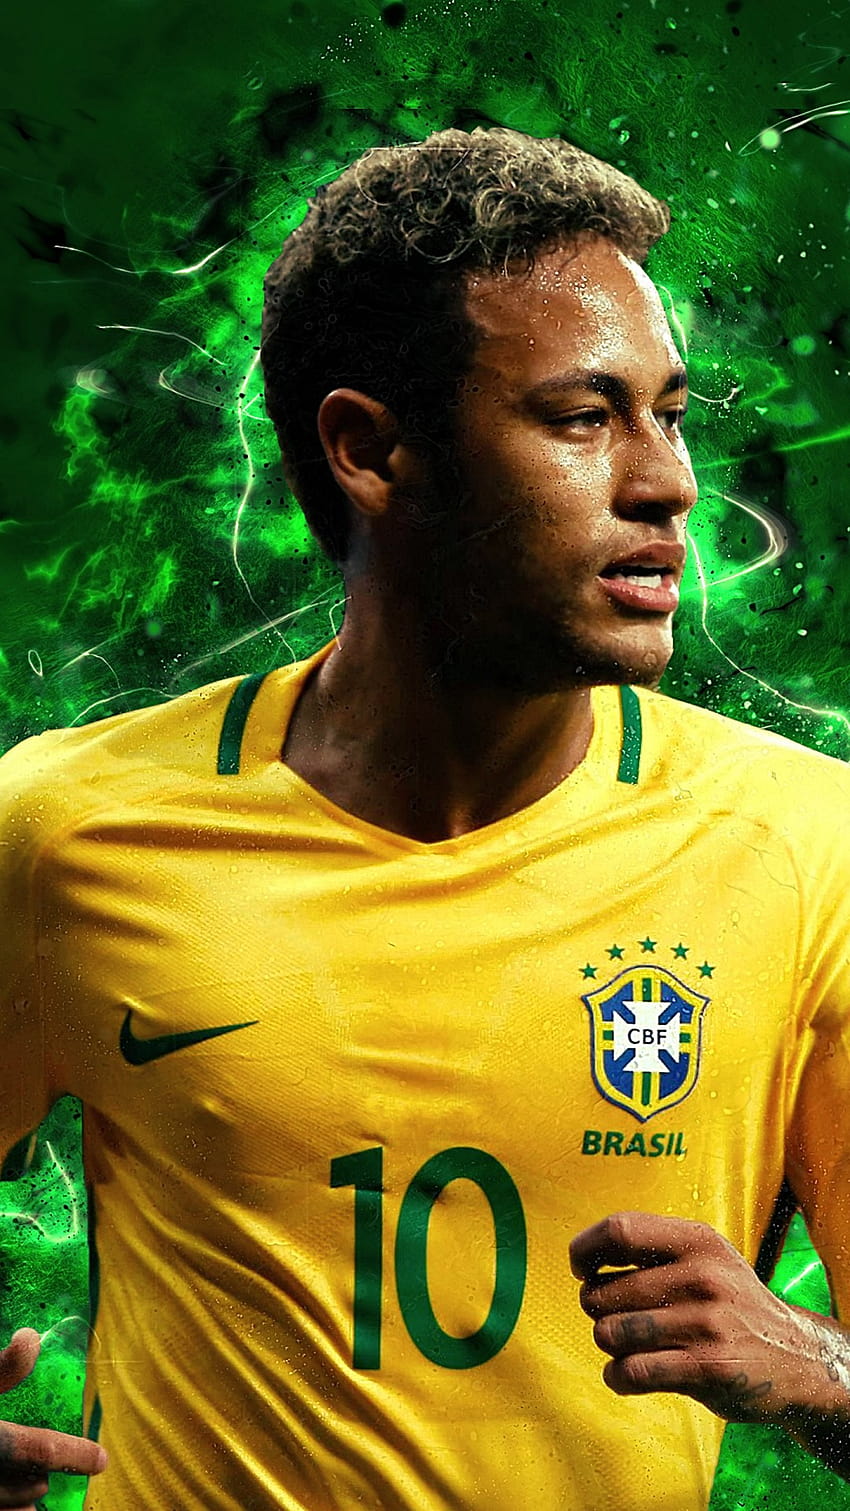 1366x768px, 720P Free download | Brazil World Cup 2018 Neymar, neymar ...